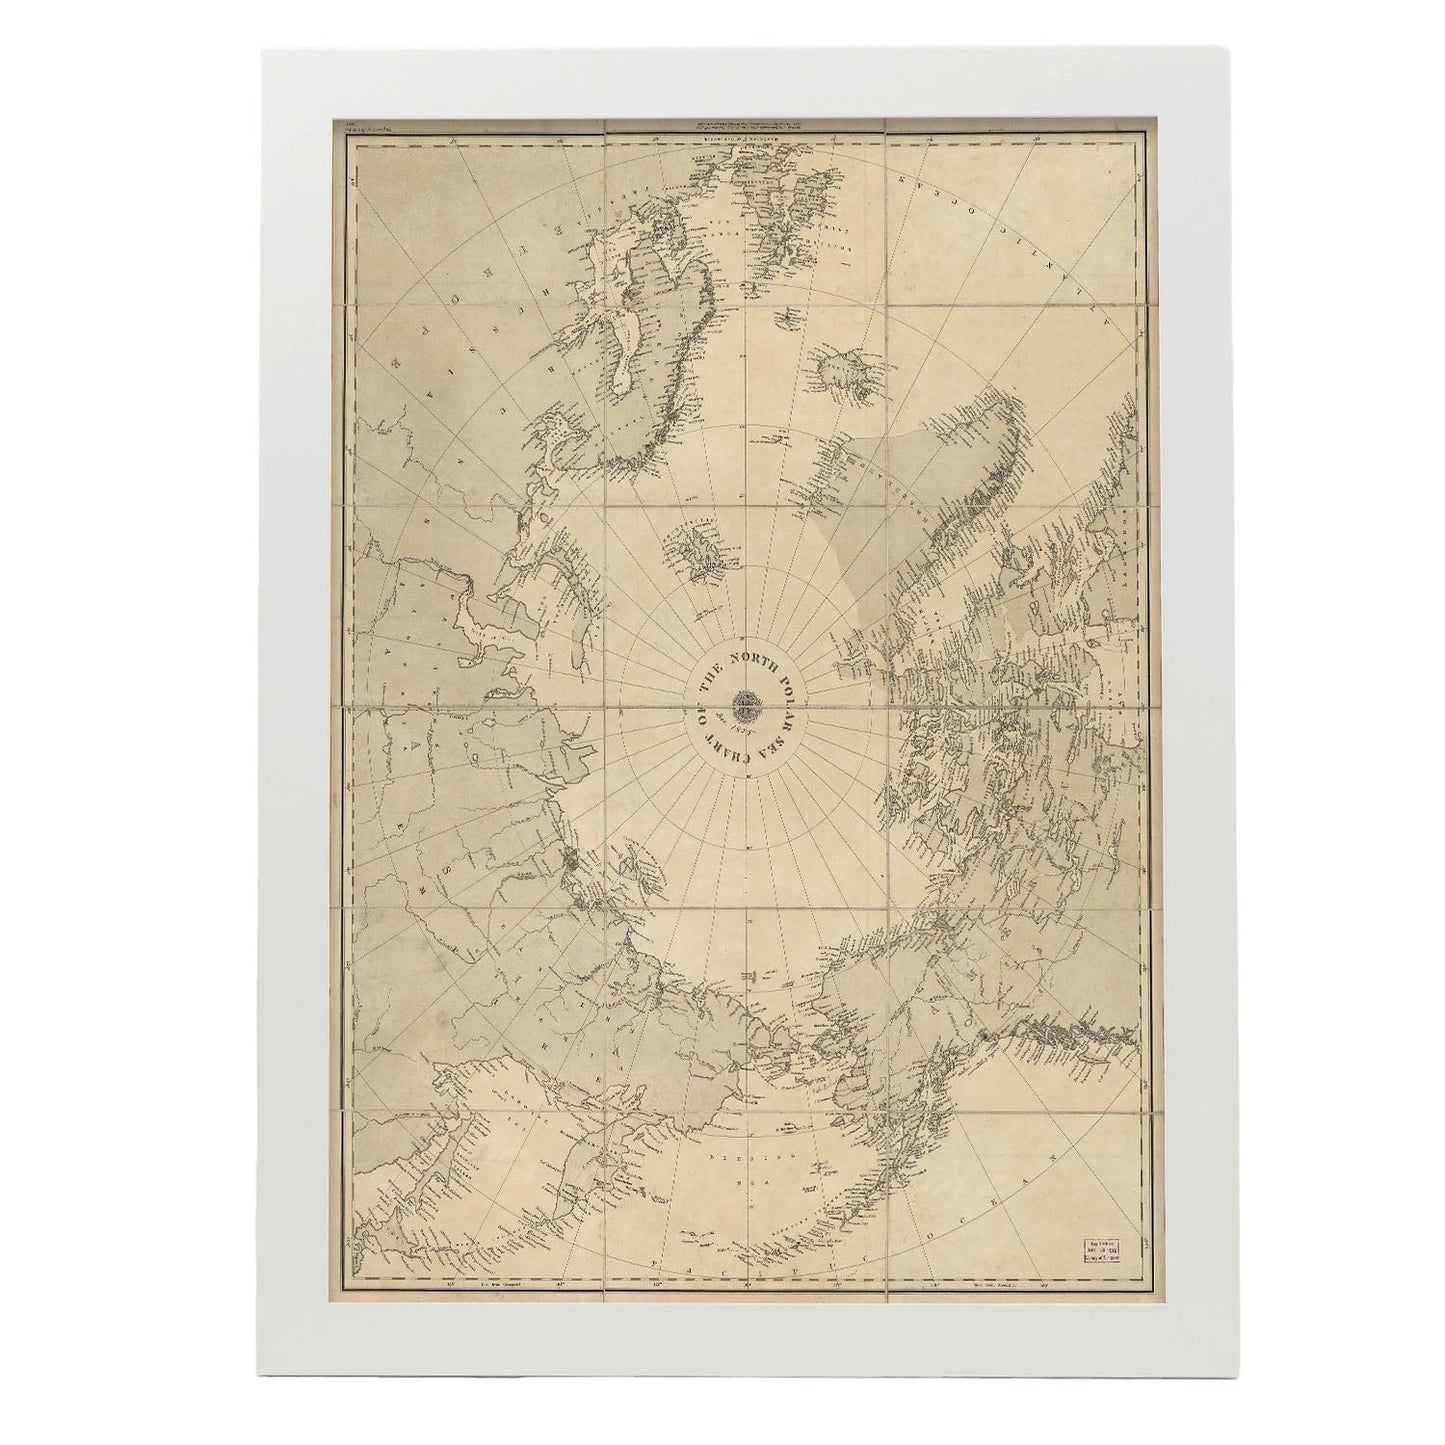 Chart_of_the_North_Polar_Sea_1855-Artwork-Nacnic-A3-Marco Blanco-Nacnic Estudio SL